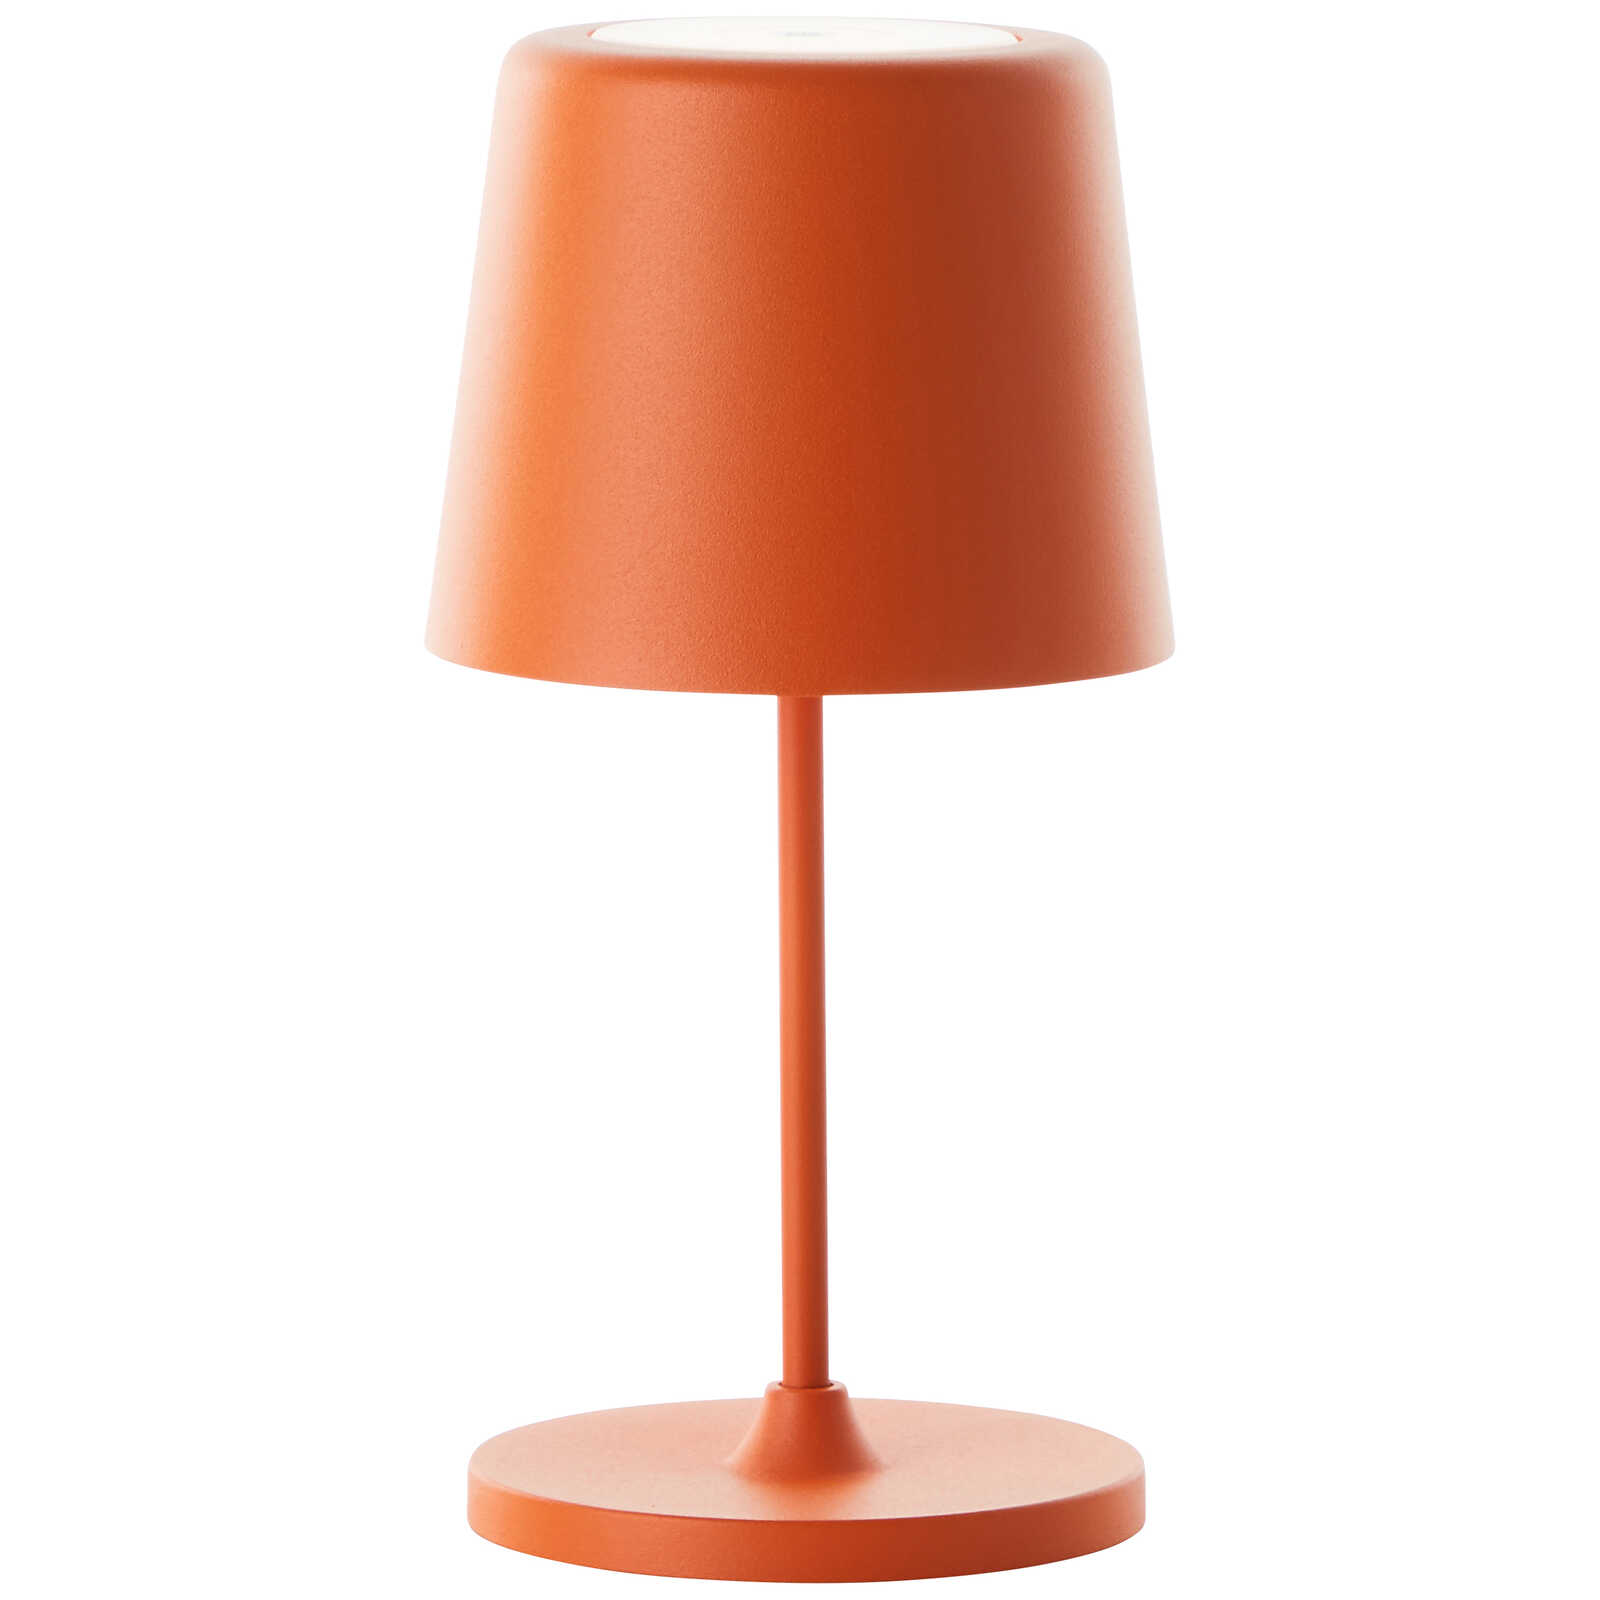             Lampe de table en métal - Cosy 7 - Orange
        